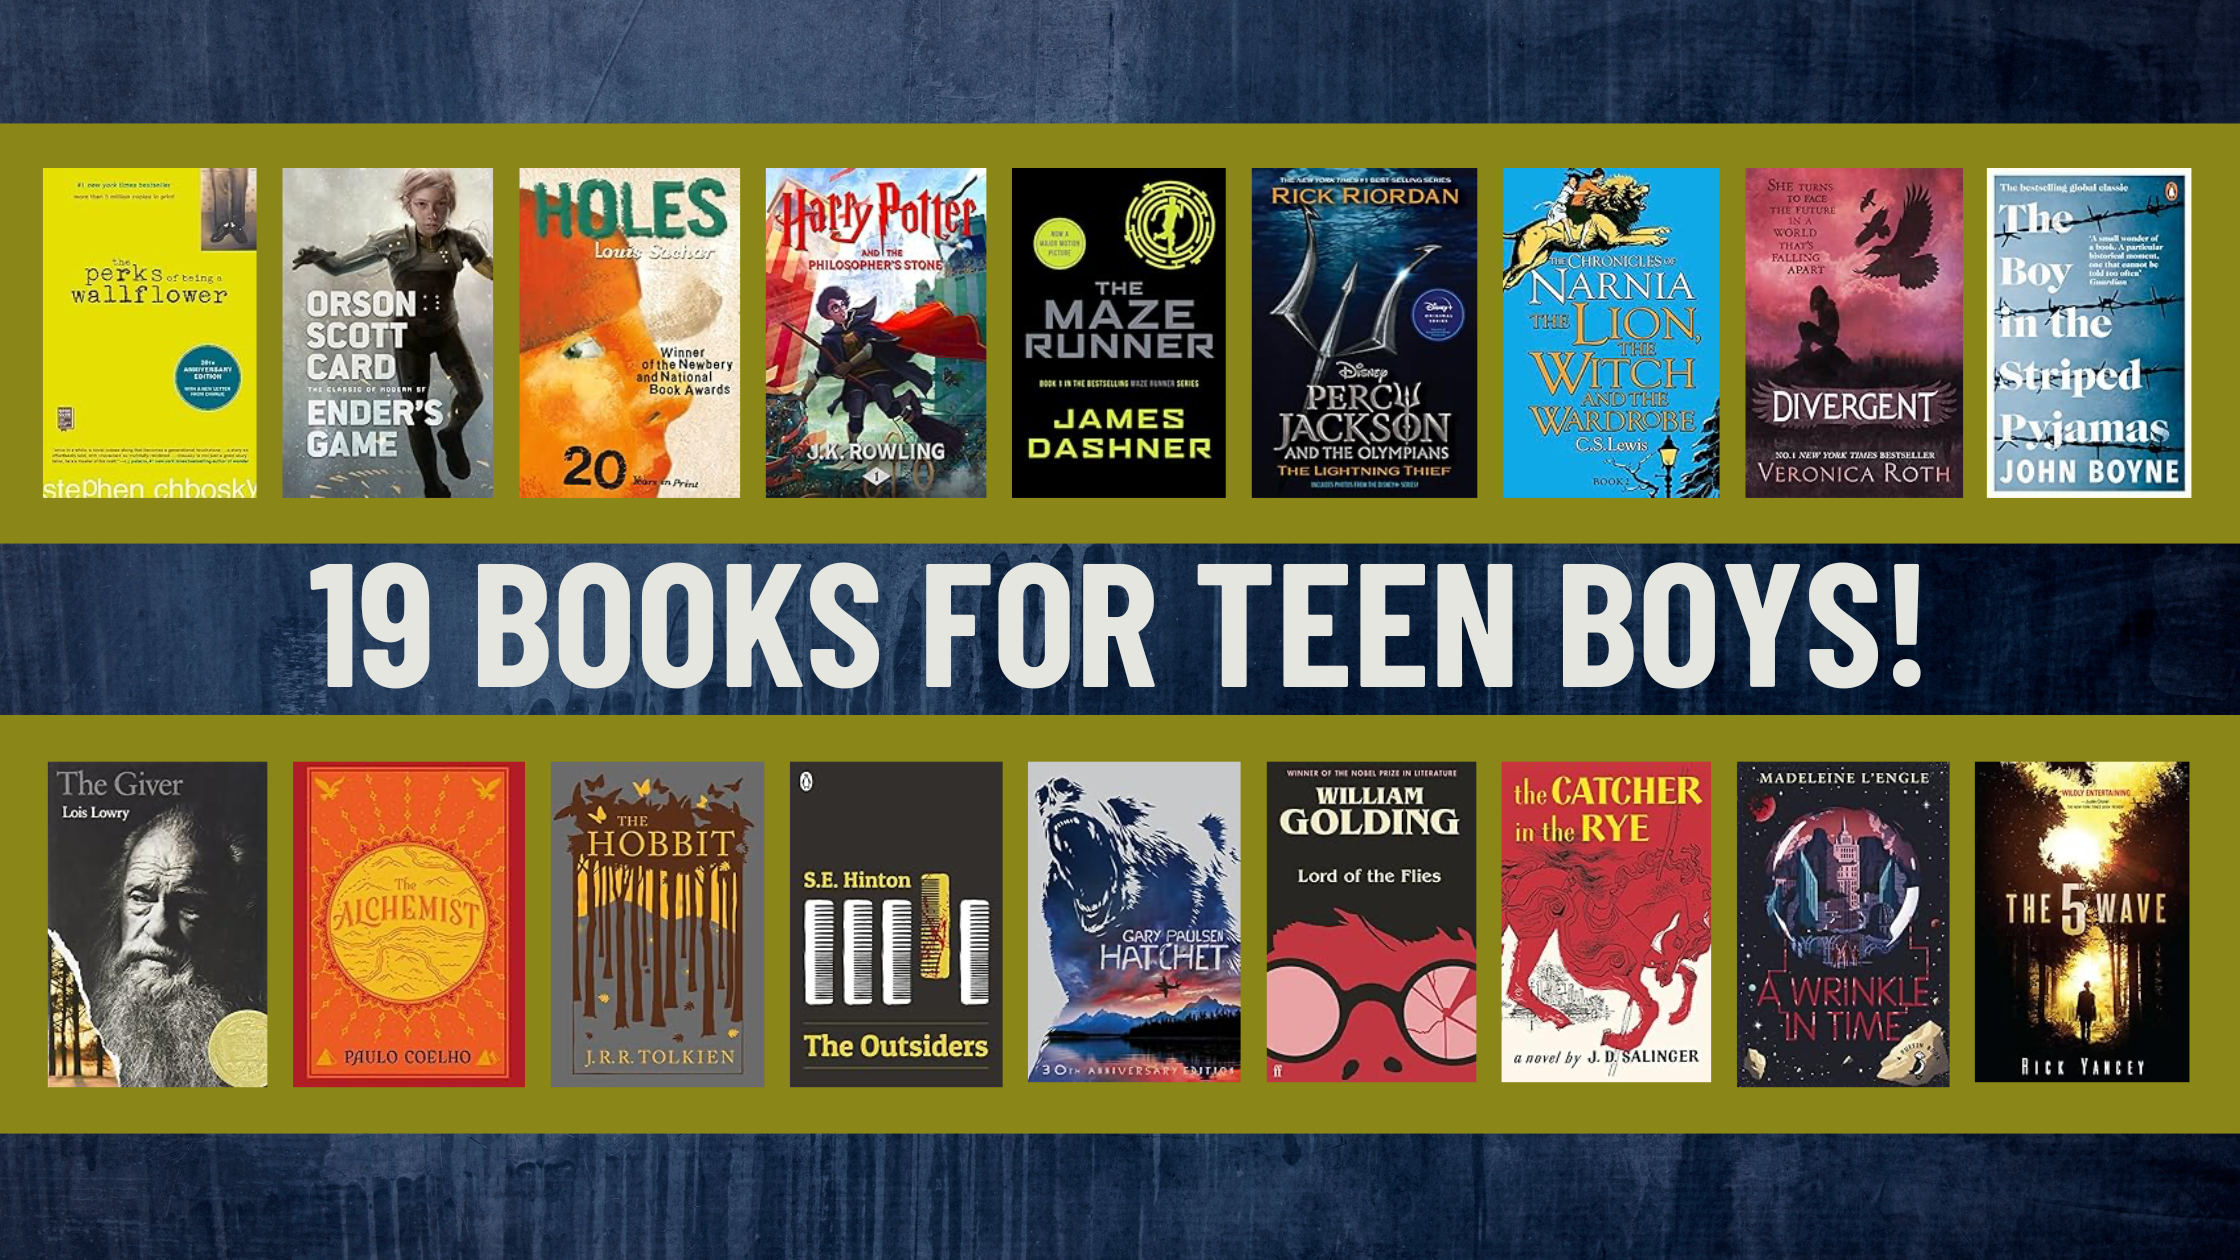 19 BOOKS FOR TEEN BOYS